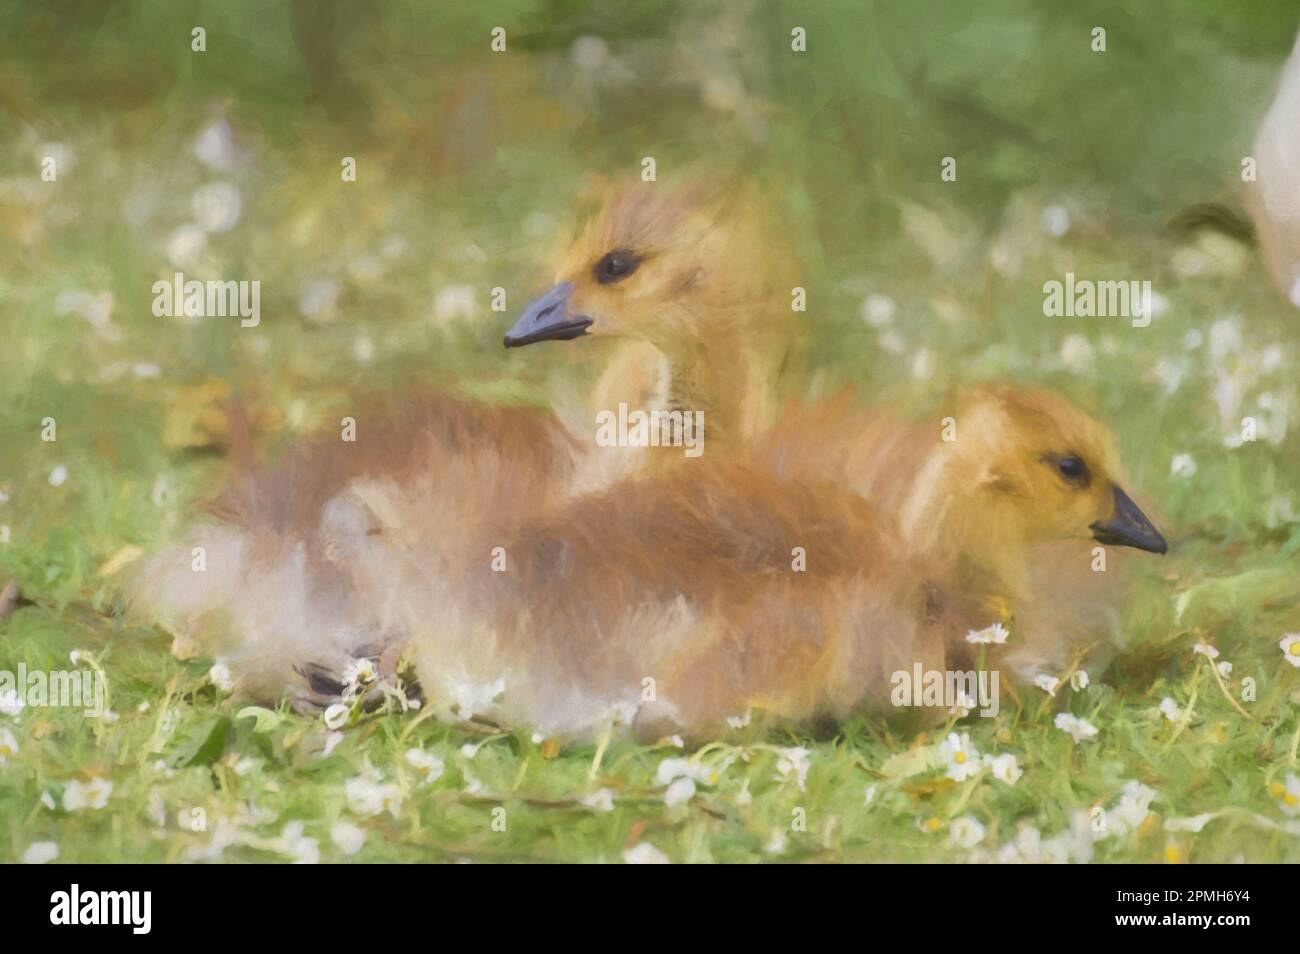 Peinture numérique d'une photo de profil en gros plan de pergolais de la bernache du canada qui se trouvent sur l'herbe verte qui est recouverte de pâquerettes. Banque D'Images